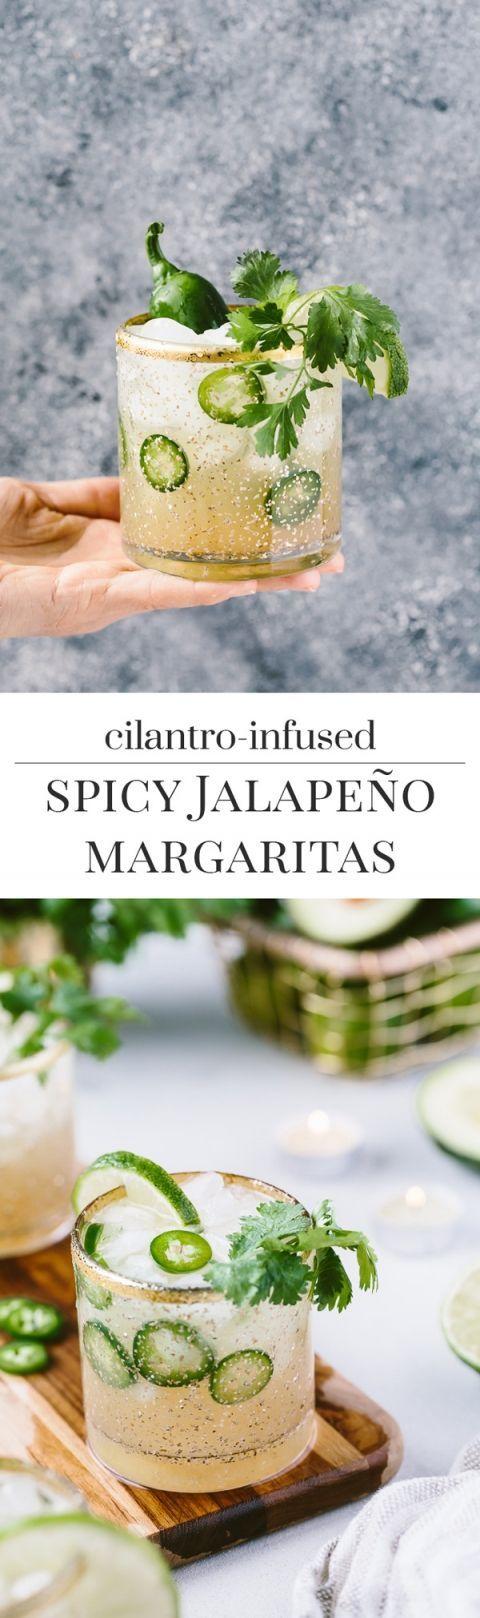 Hochzeit - Cilantro-Infused Spicy Jalapeno Margaritas